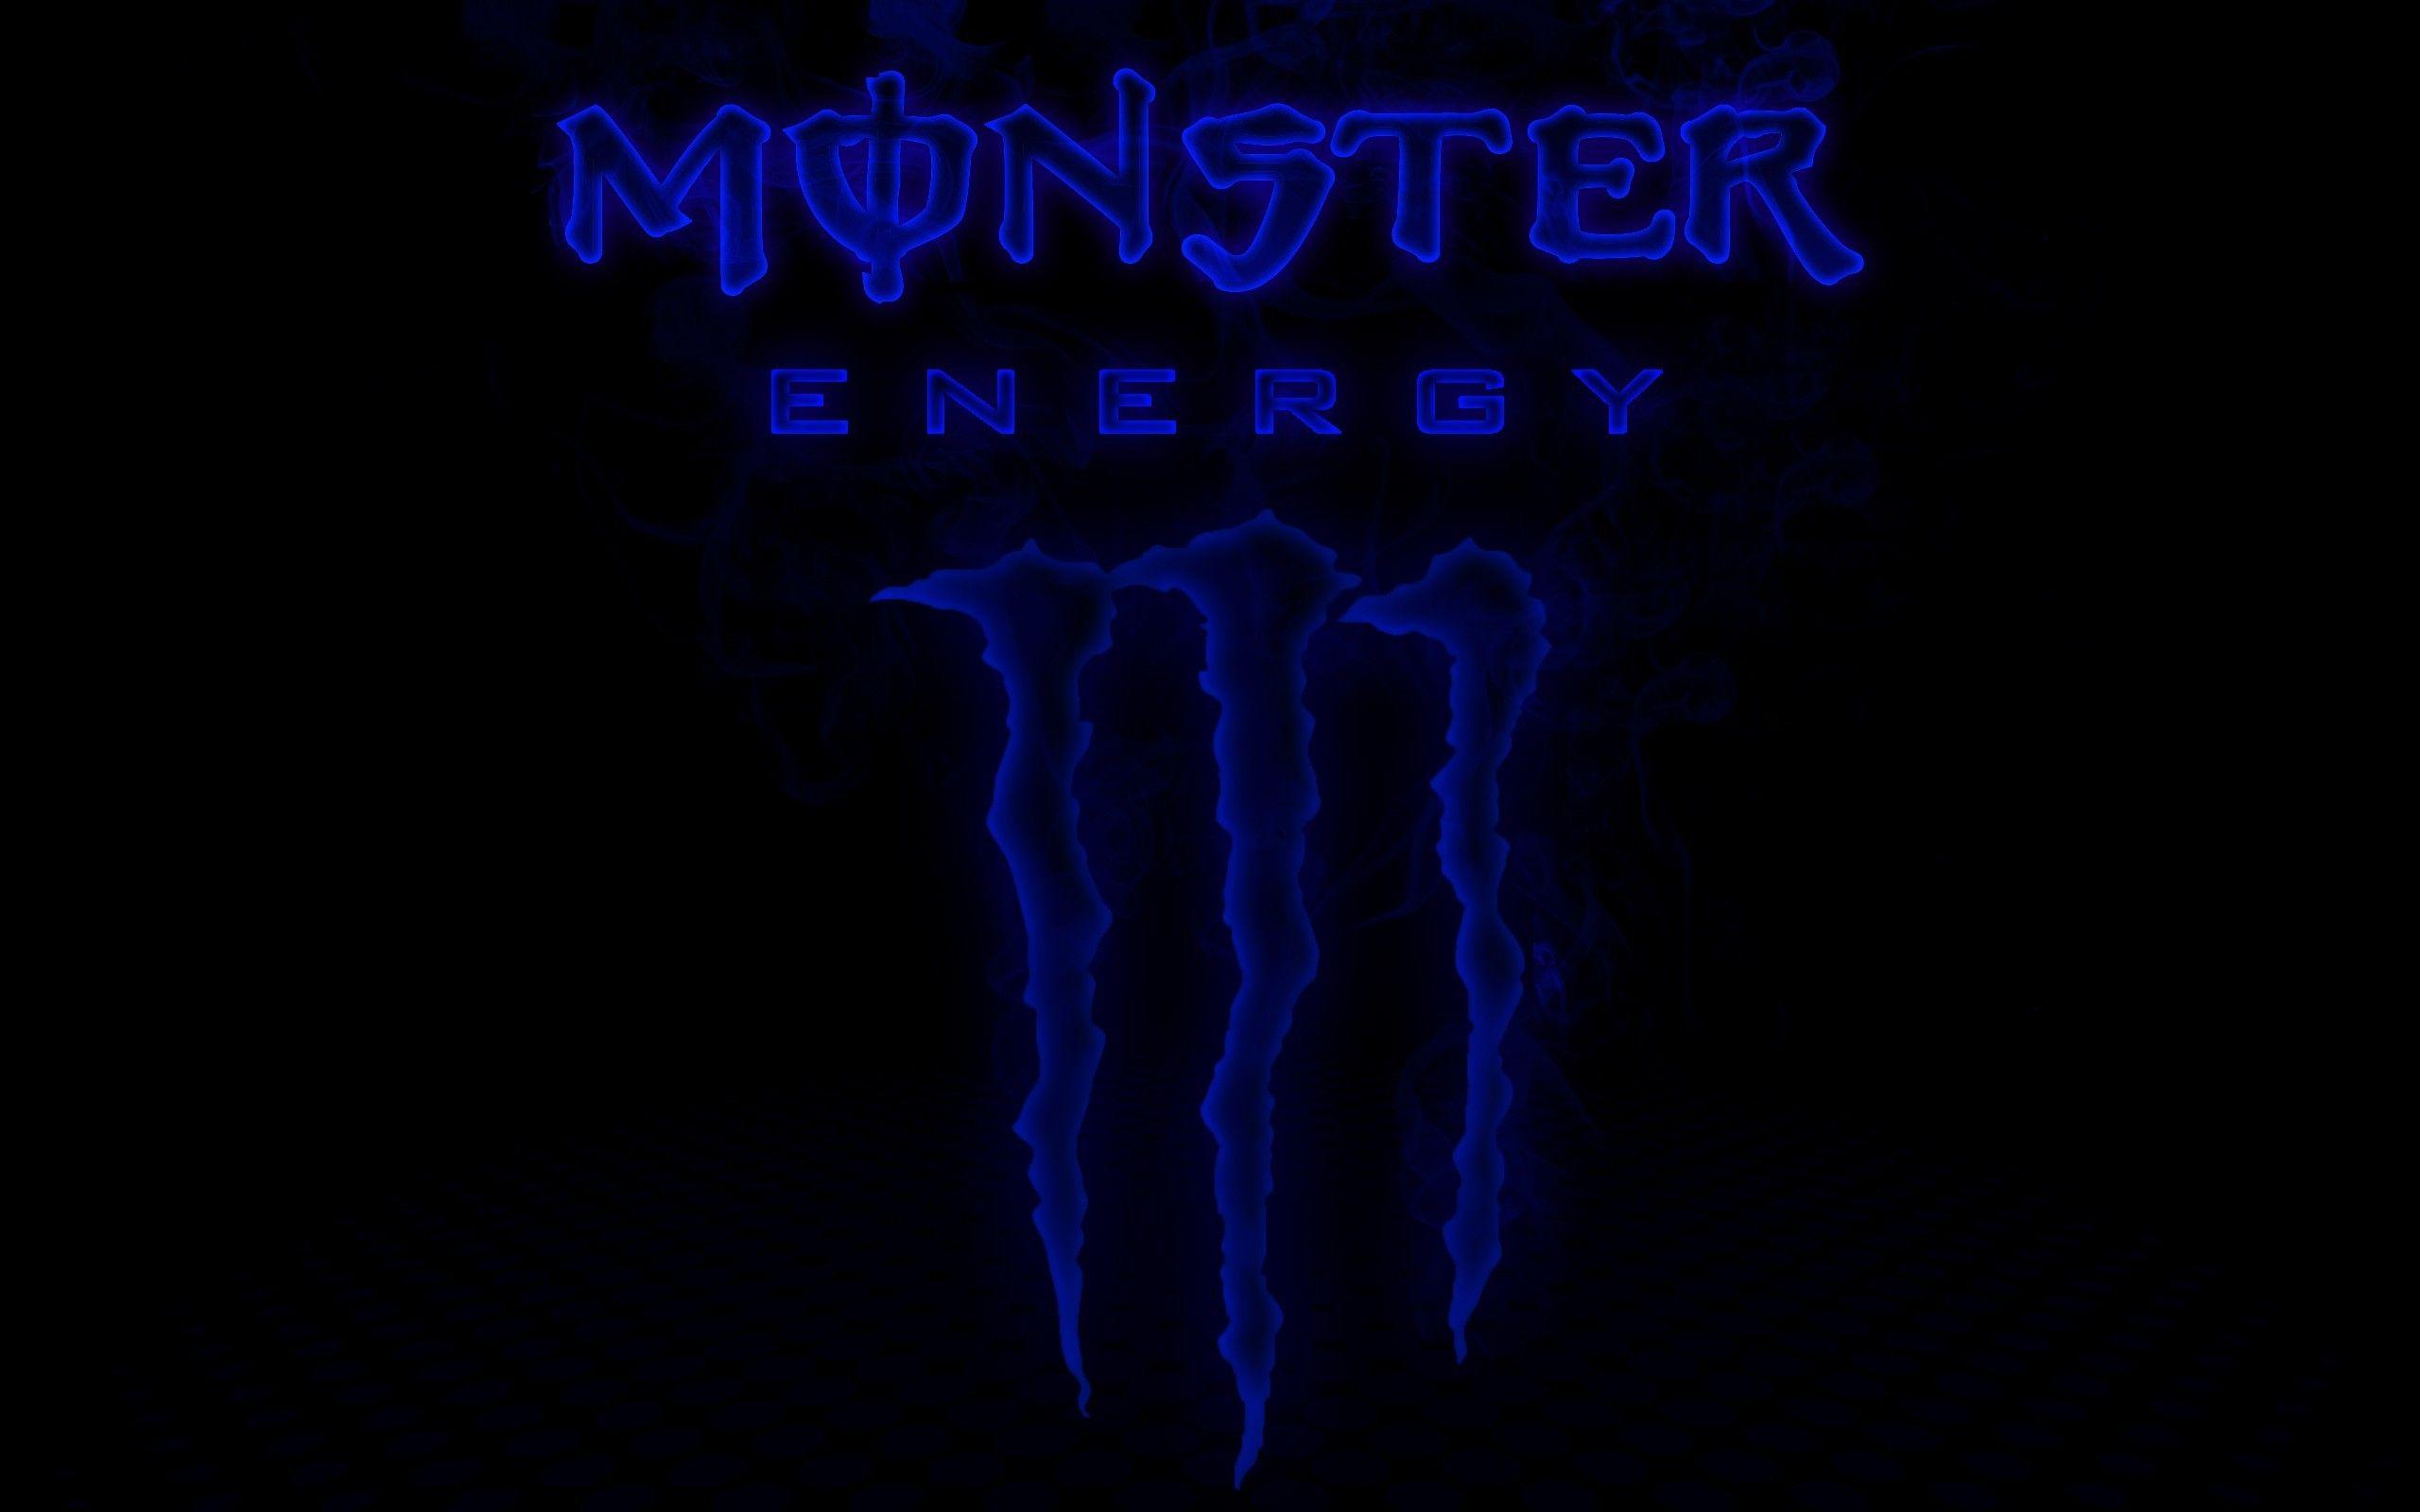 Monster energy blue wallpaper. PC